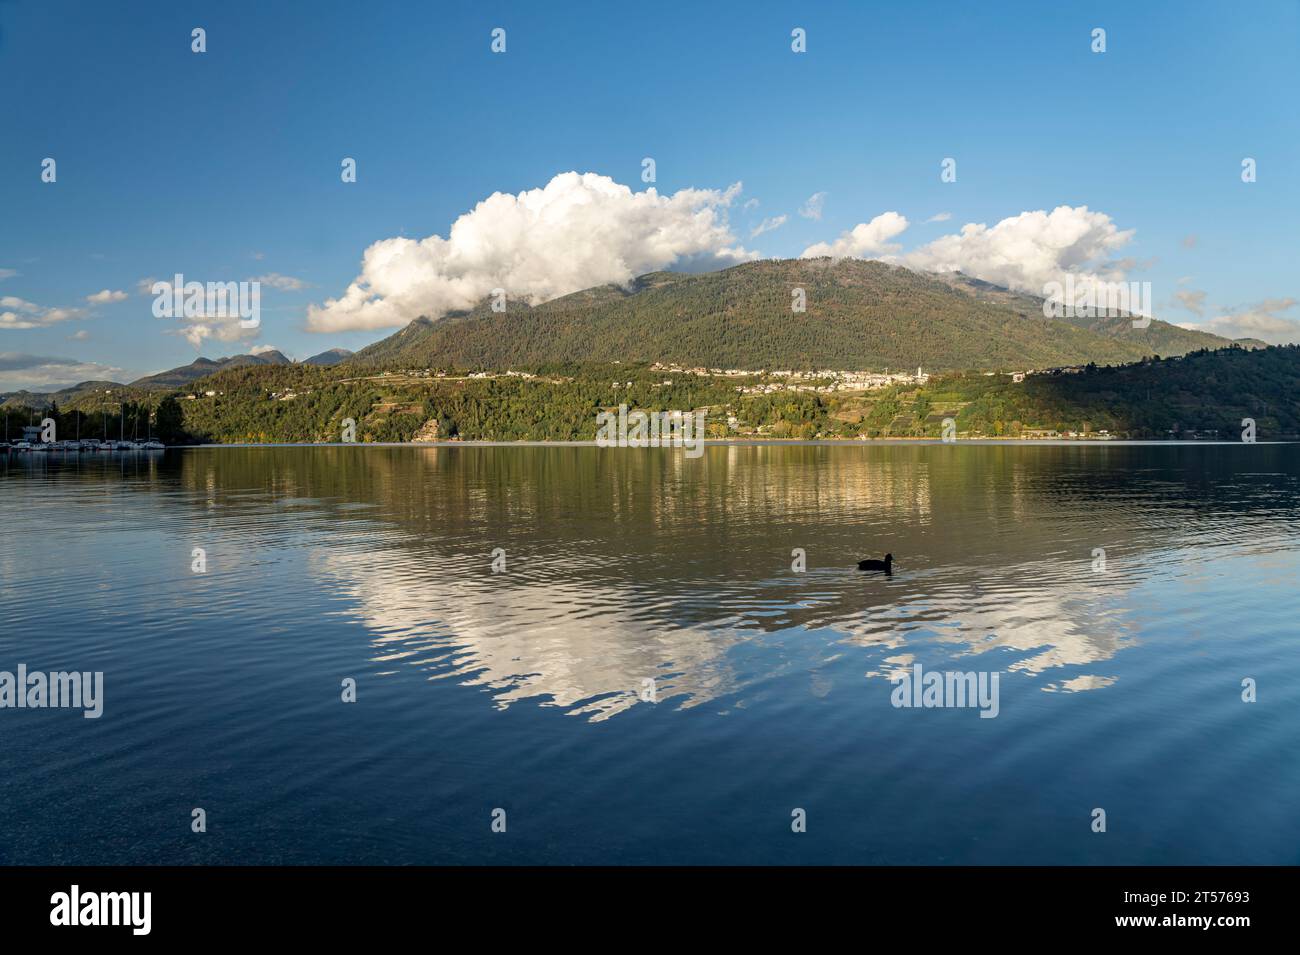 Der Caldonazzosee im Valsugana, Trentino, Italien, Europa |   Lago di Caldonazzo, Valsugana, Trentino, Italy, Europe Stock Photo